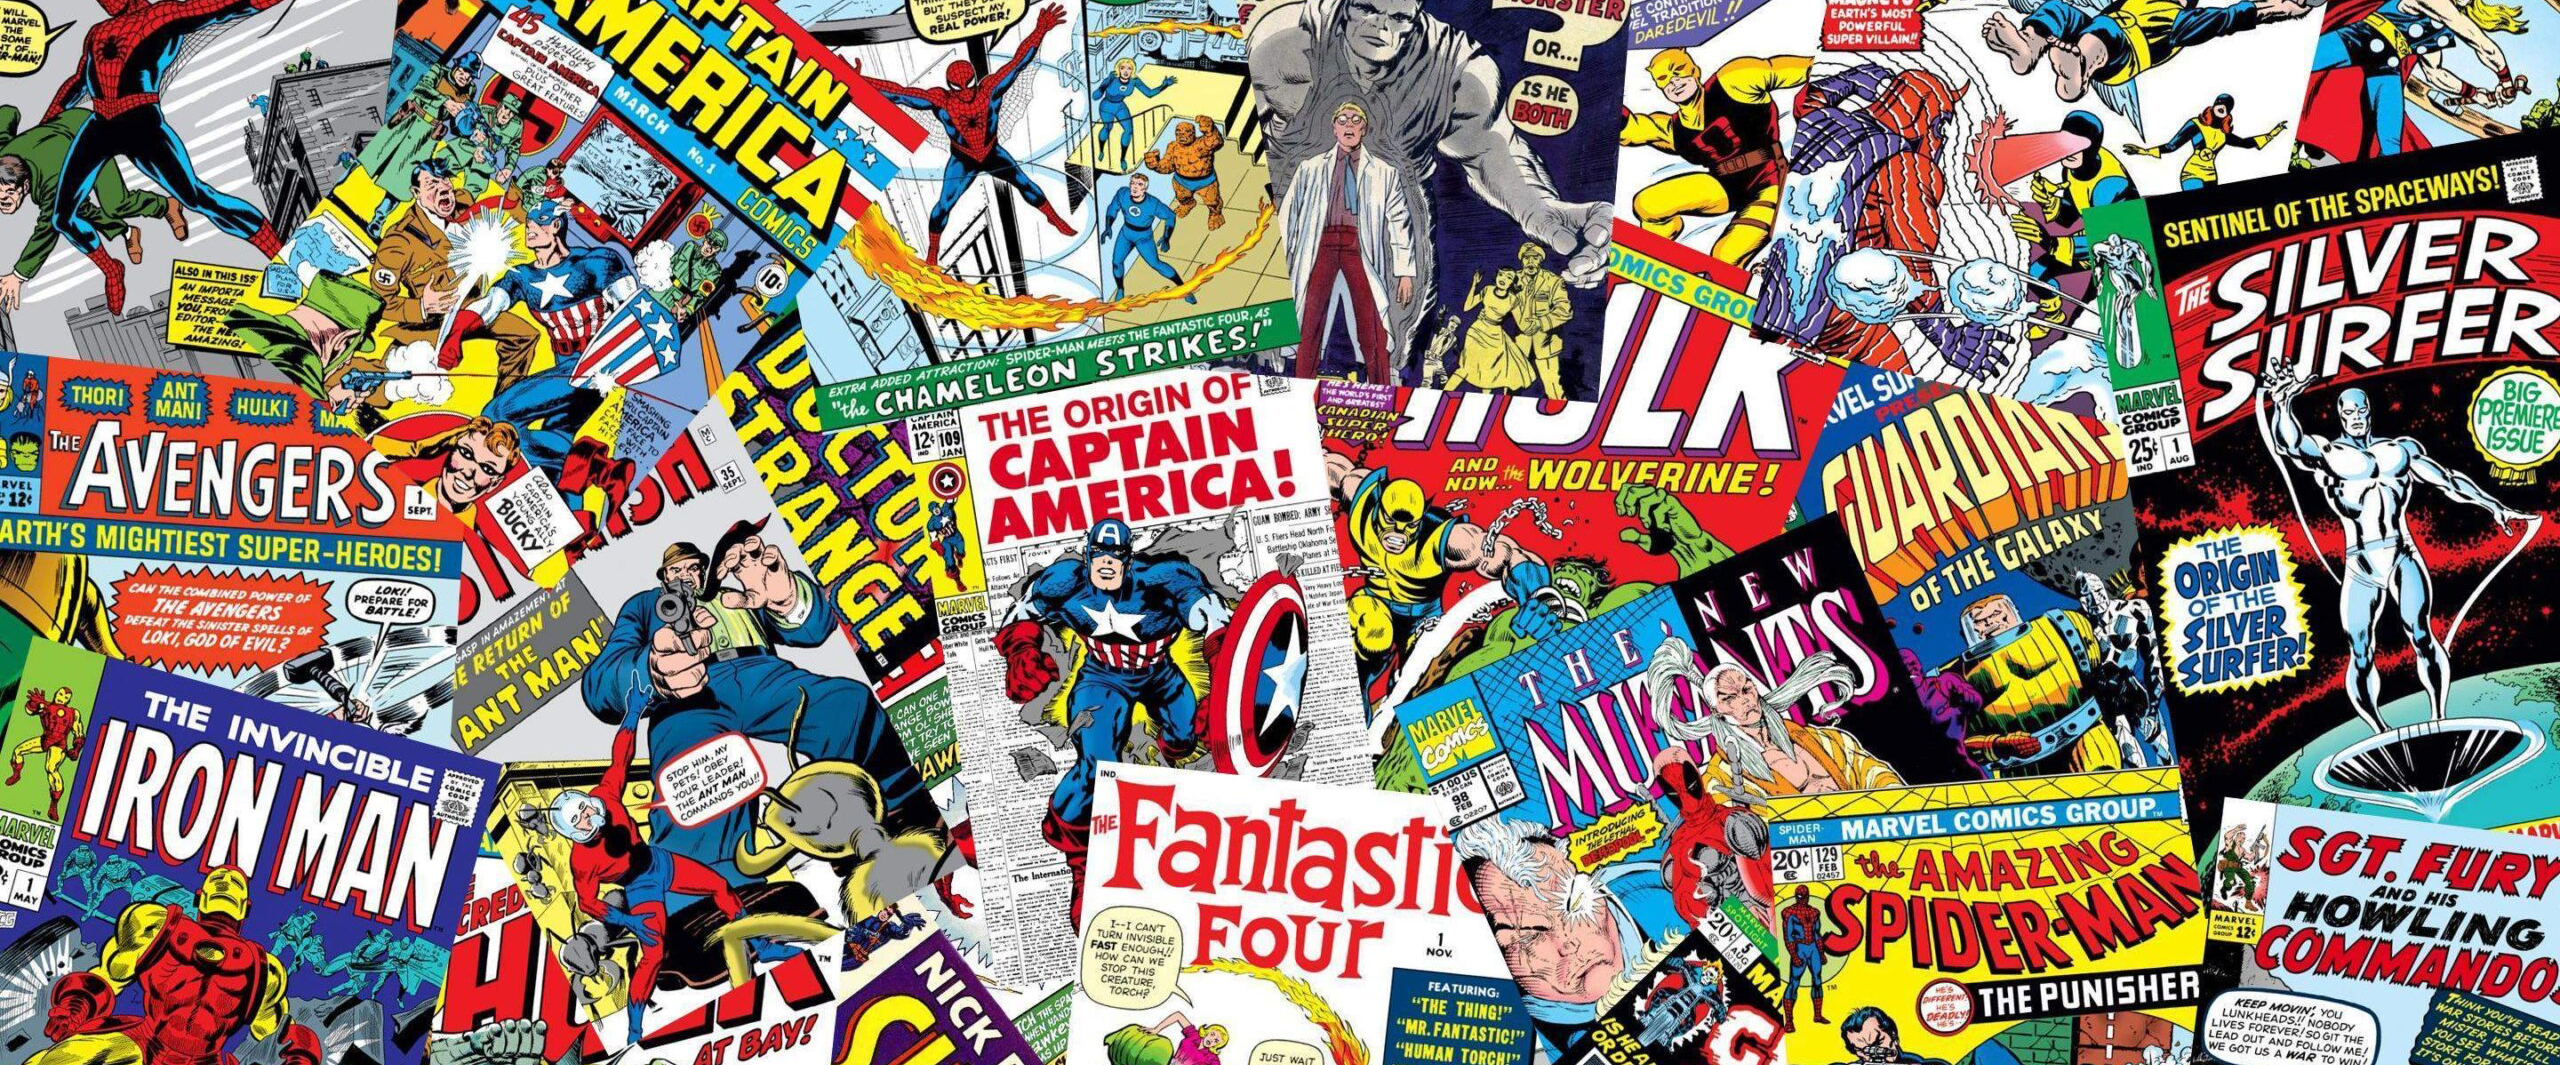 Pile of comics